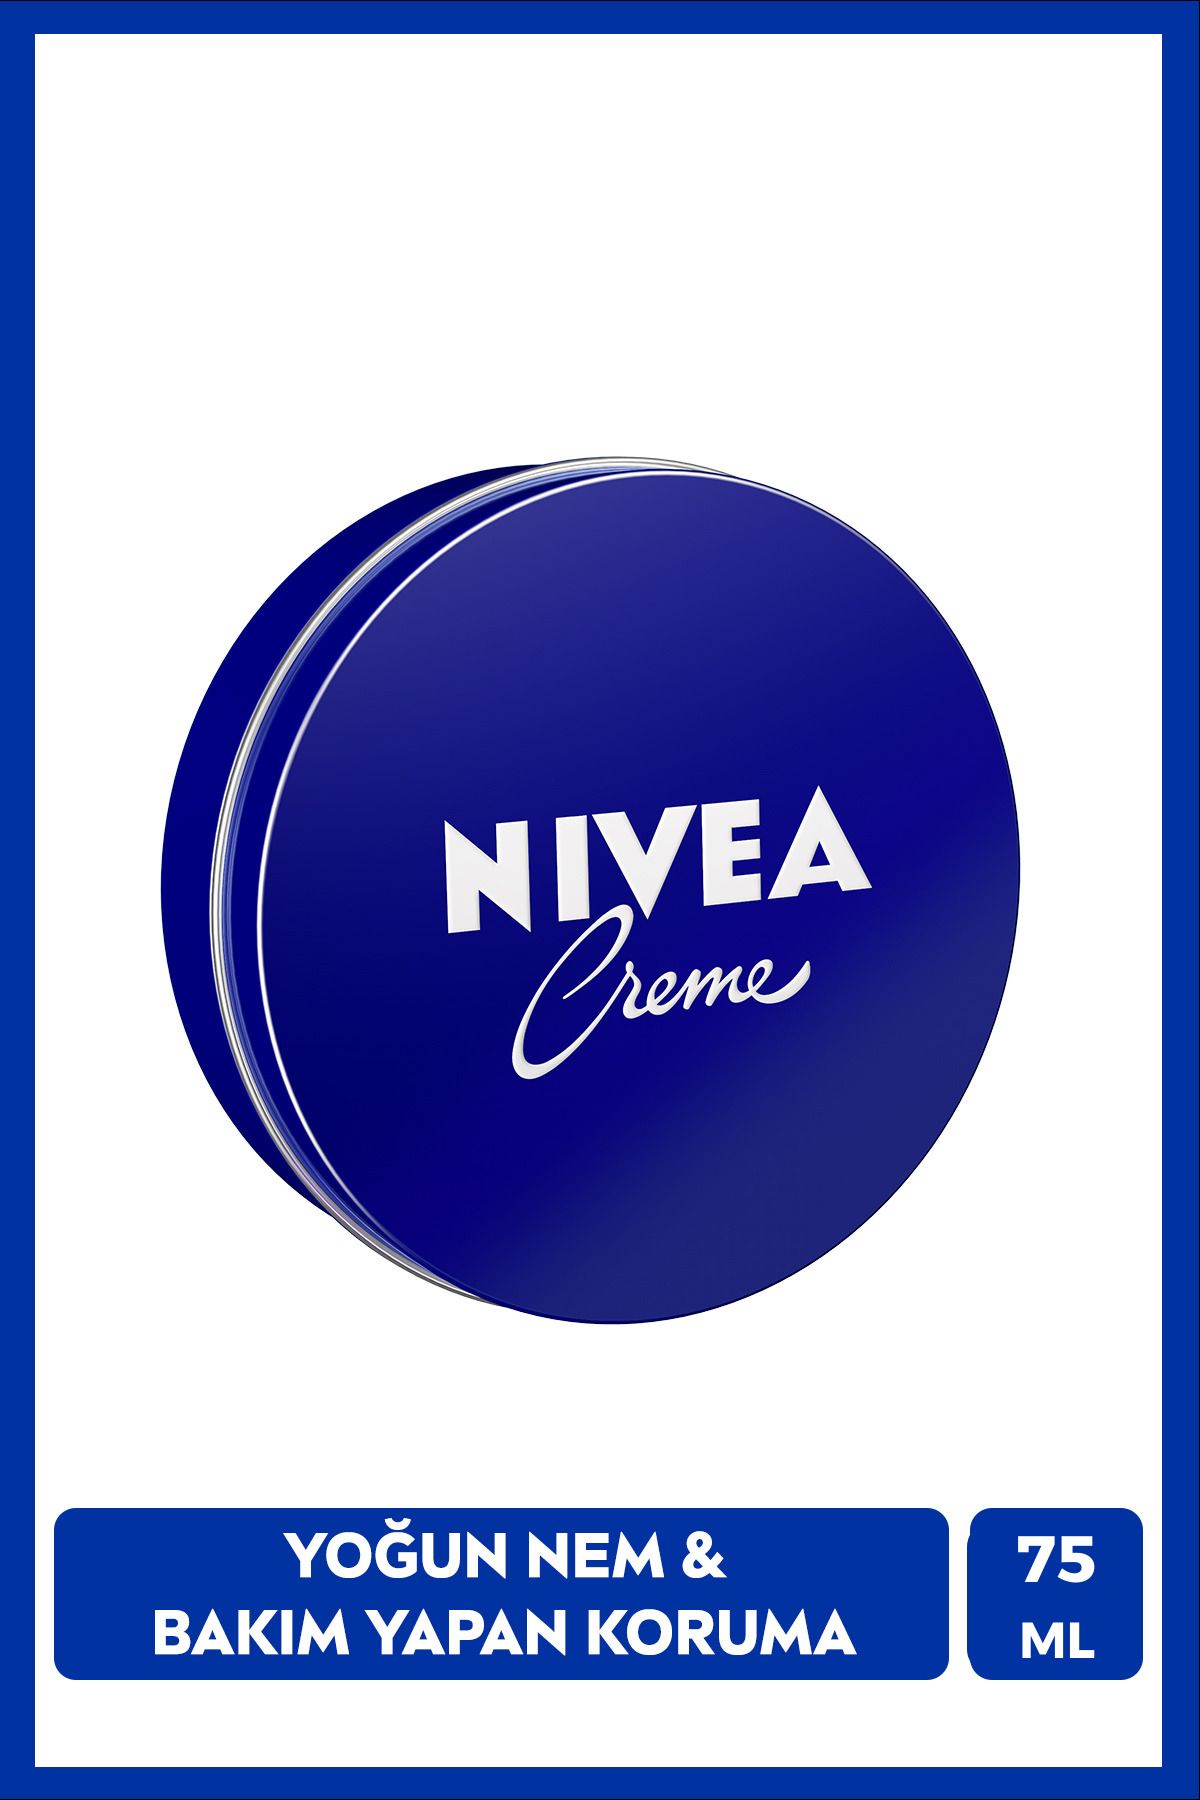 NIVEA Creme 75ml, Bakım Yapan Koruma, Uzun Süreli Yoğun Nemlendirici, El Yüz ve Vücut